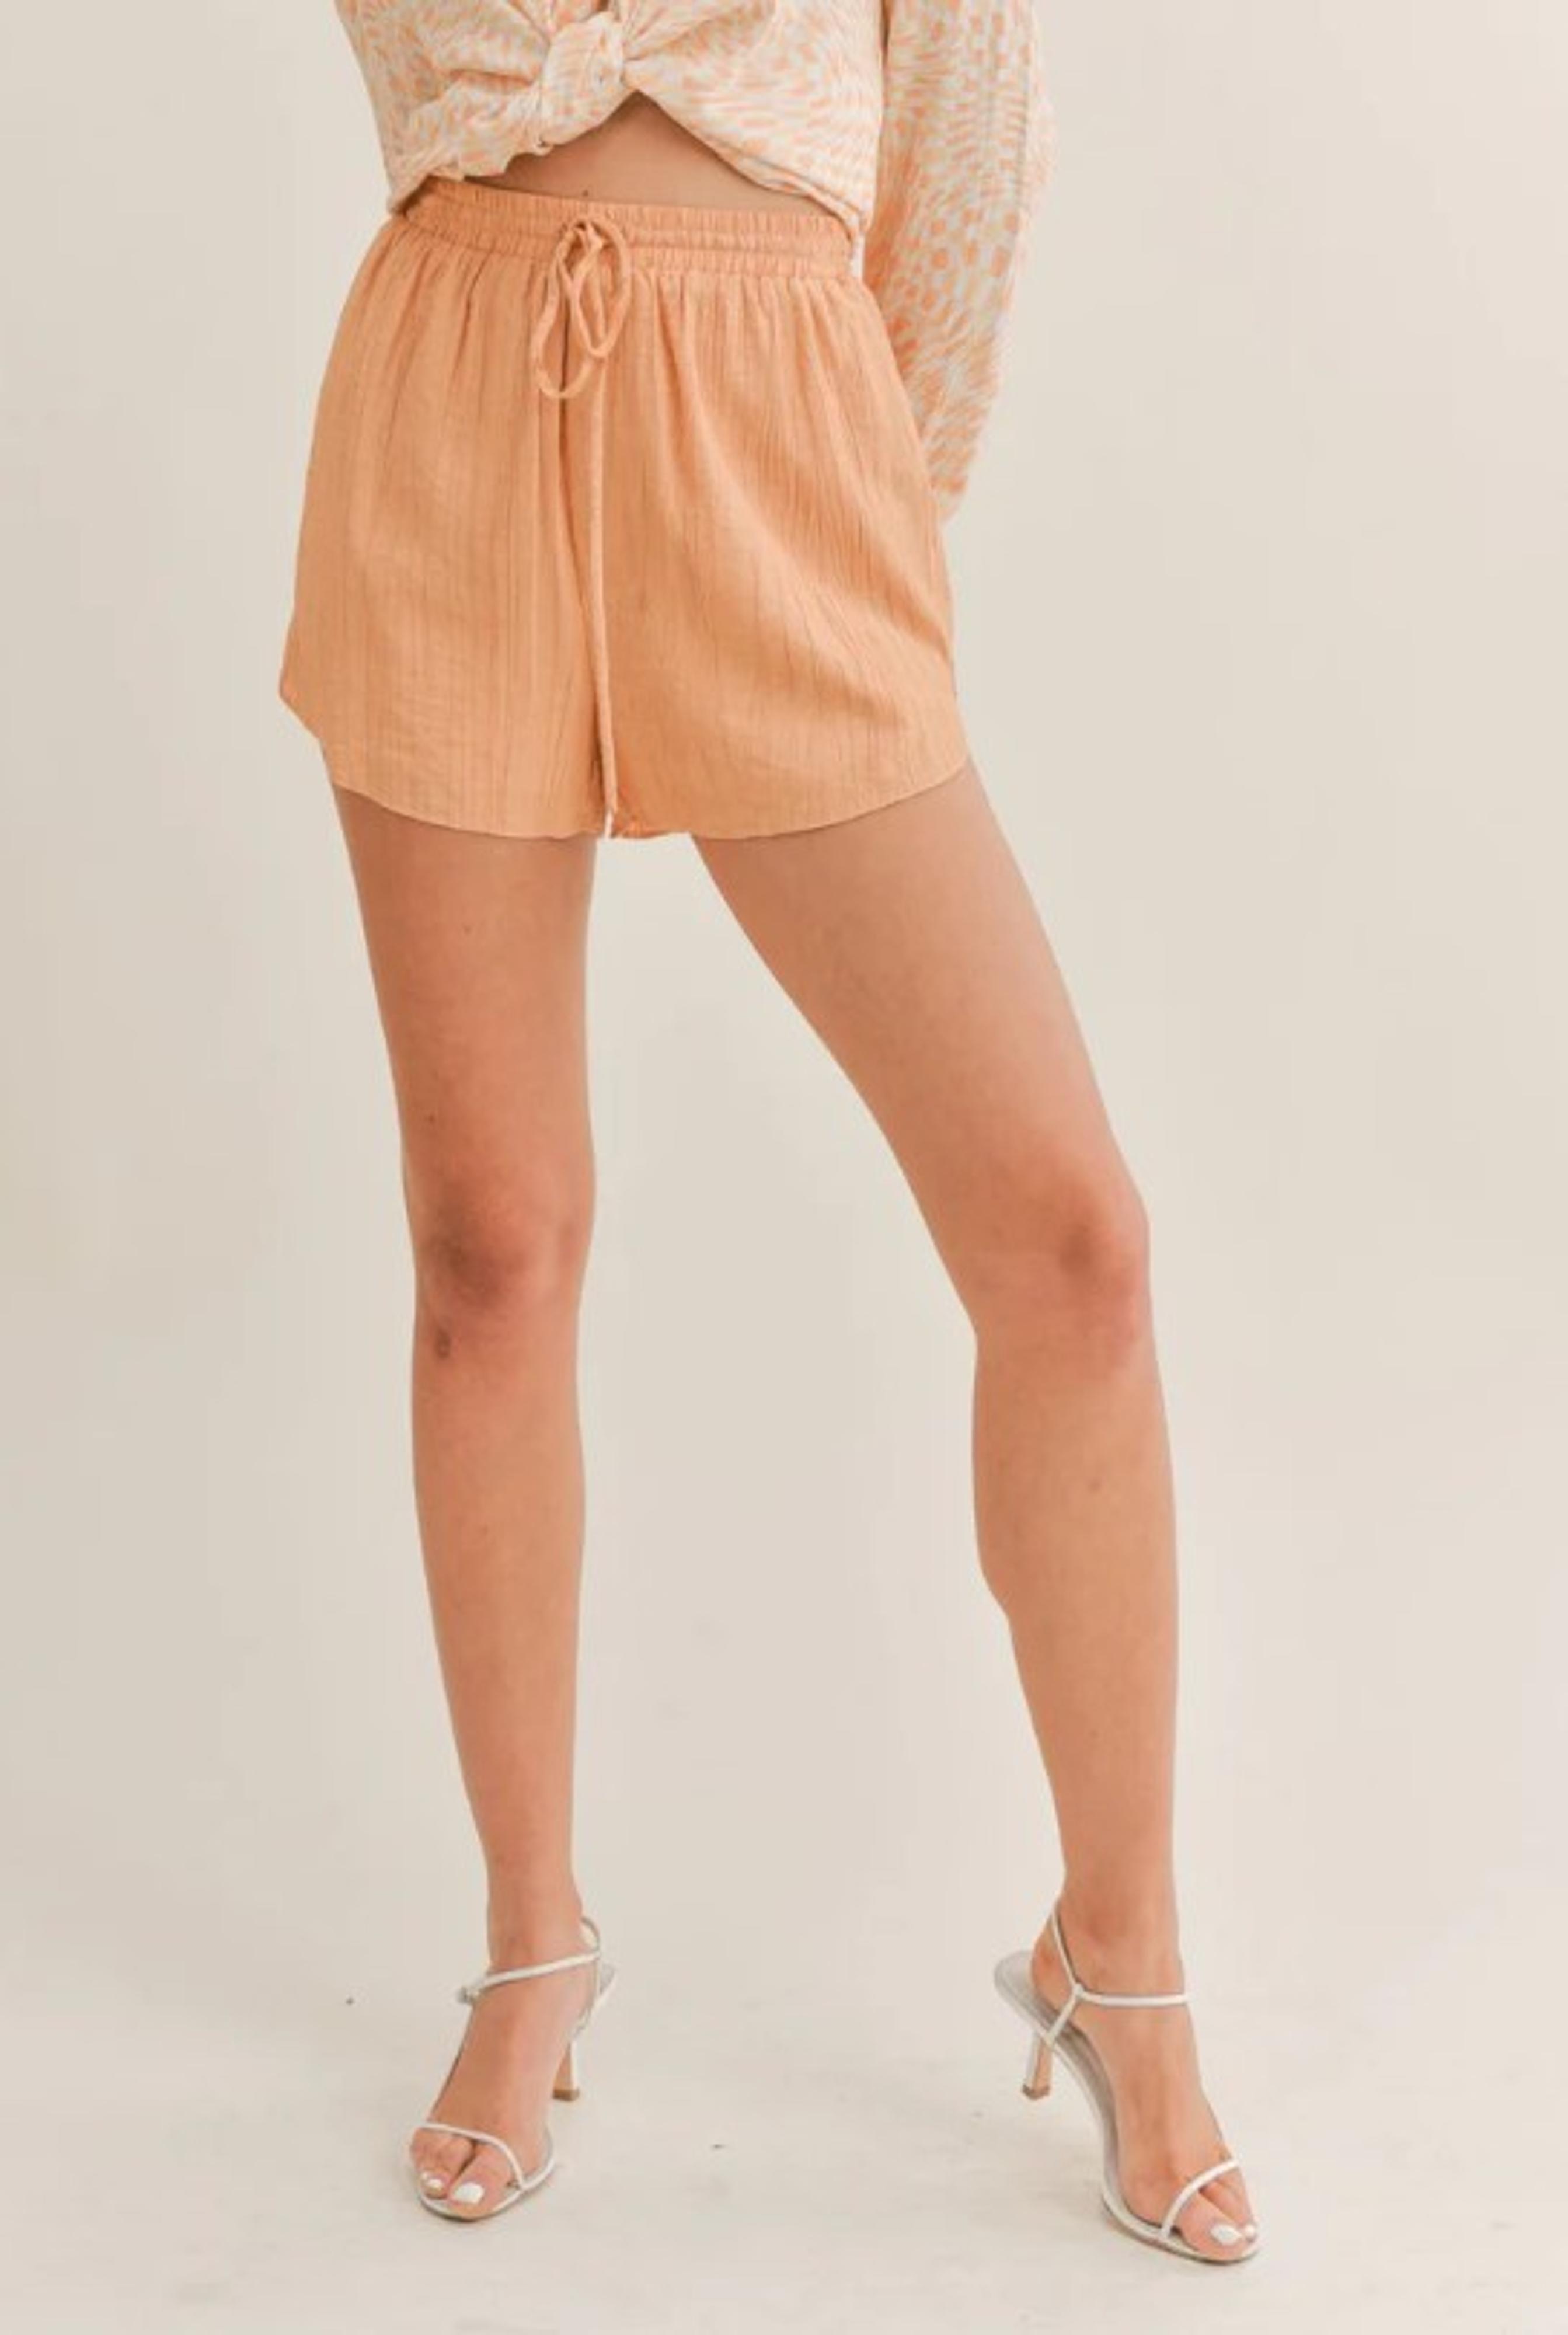  Clementine Crush Shorts